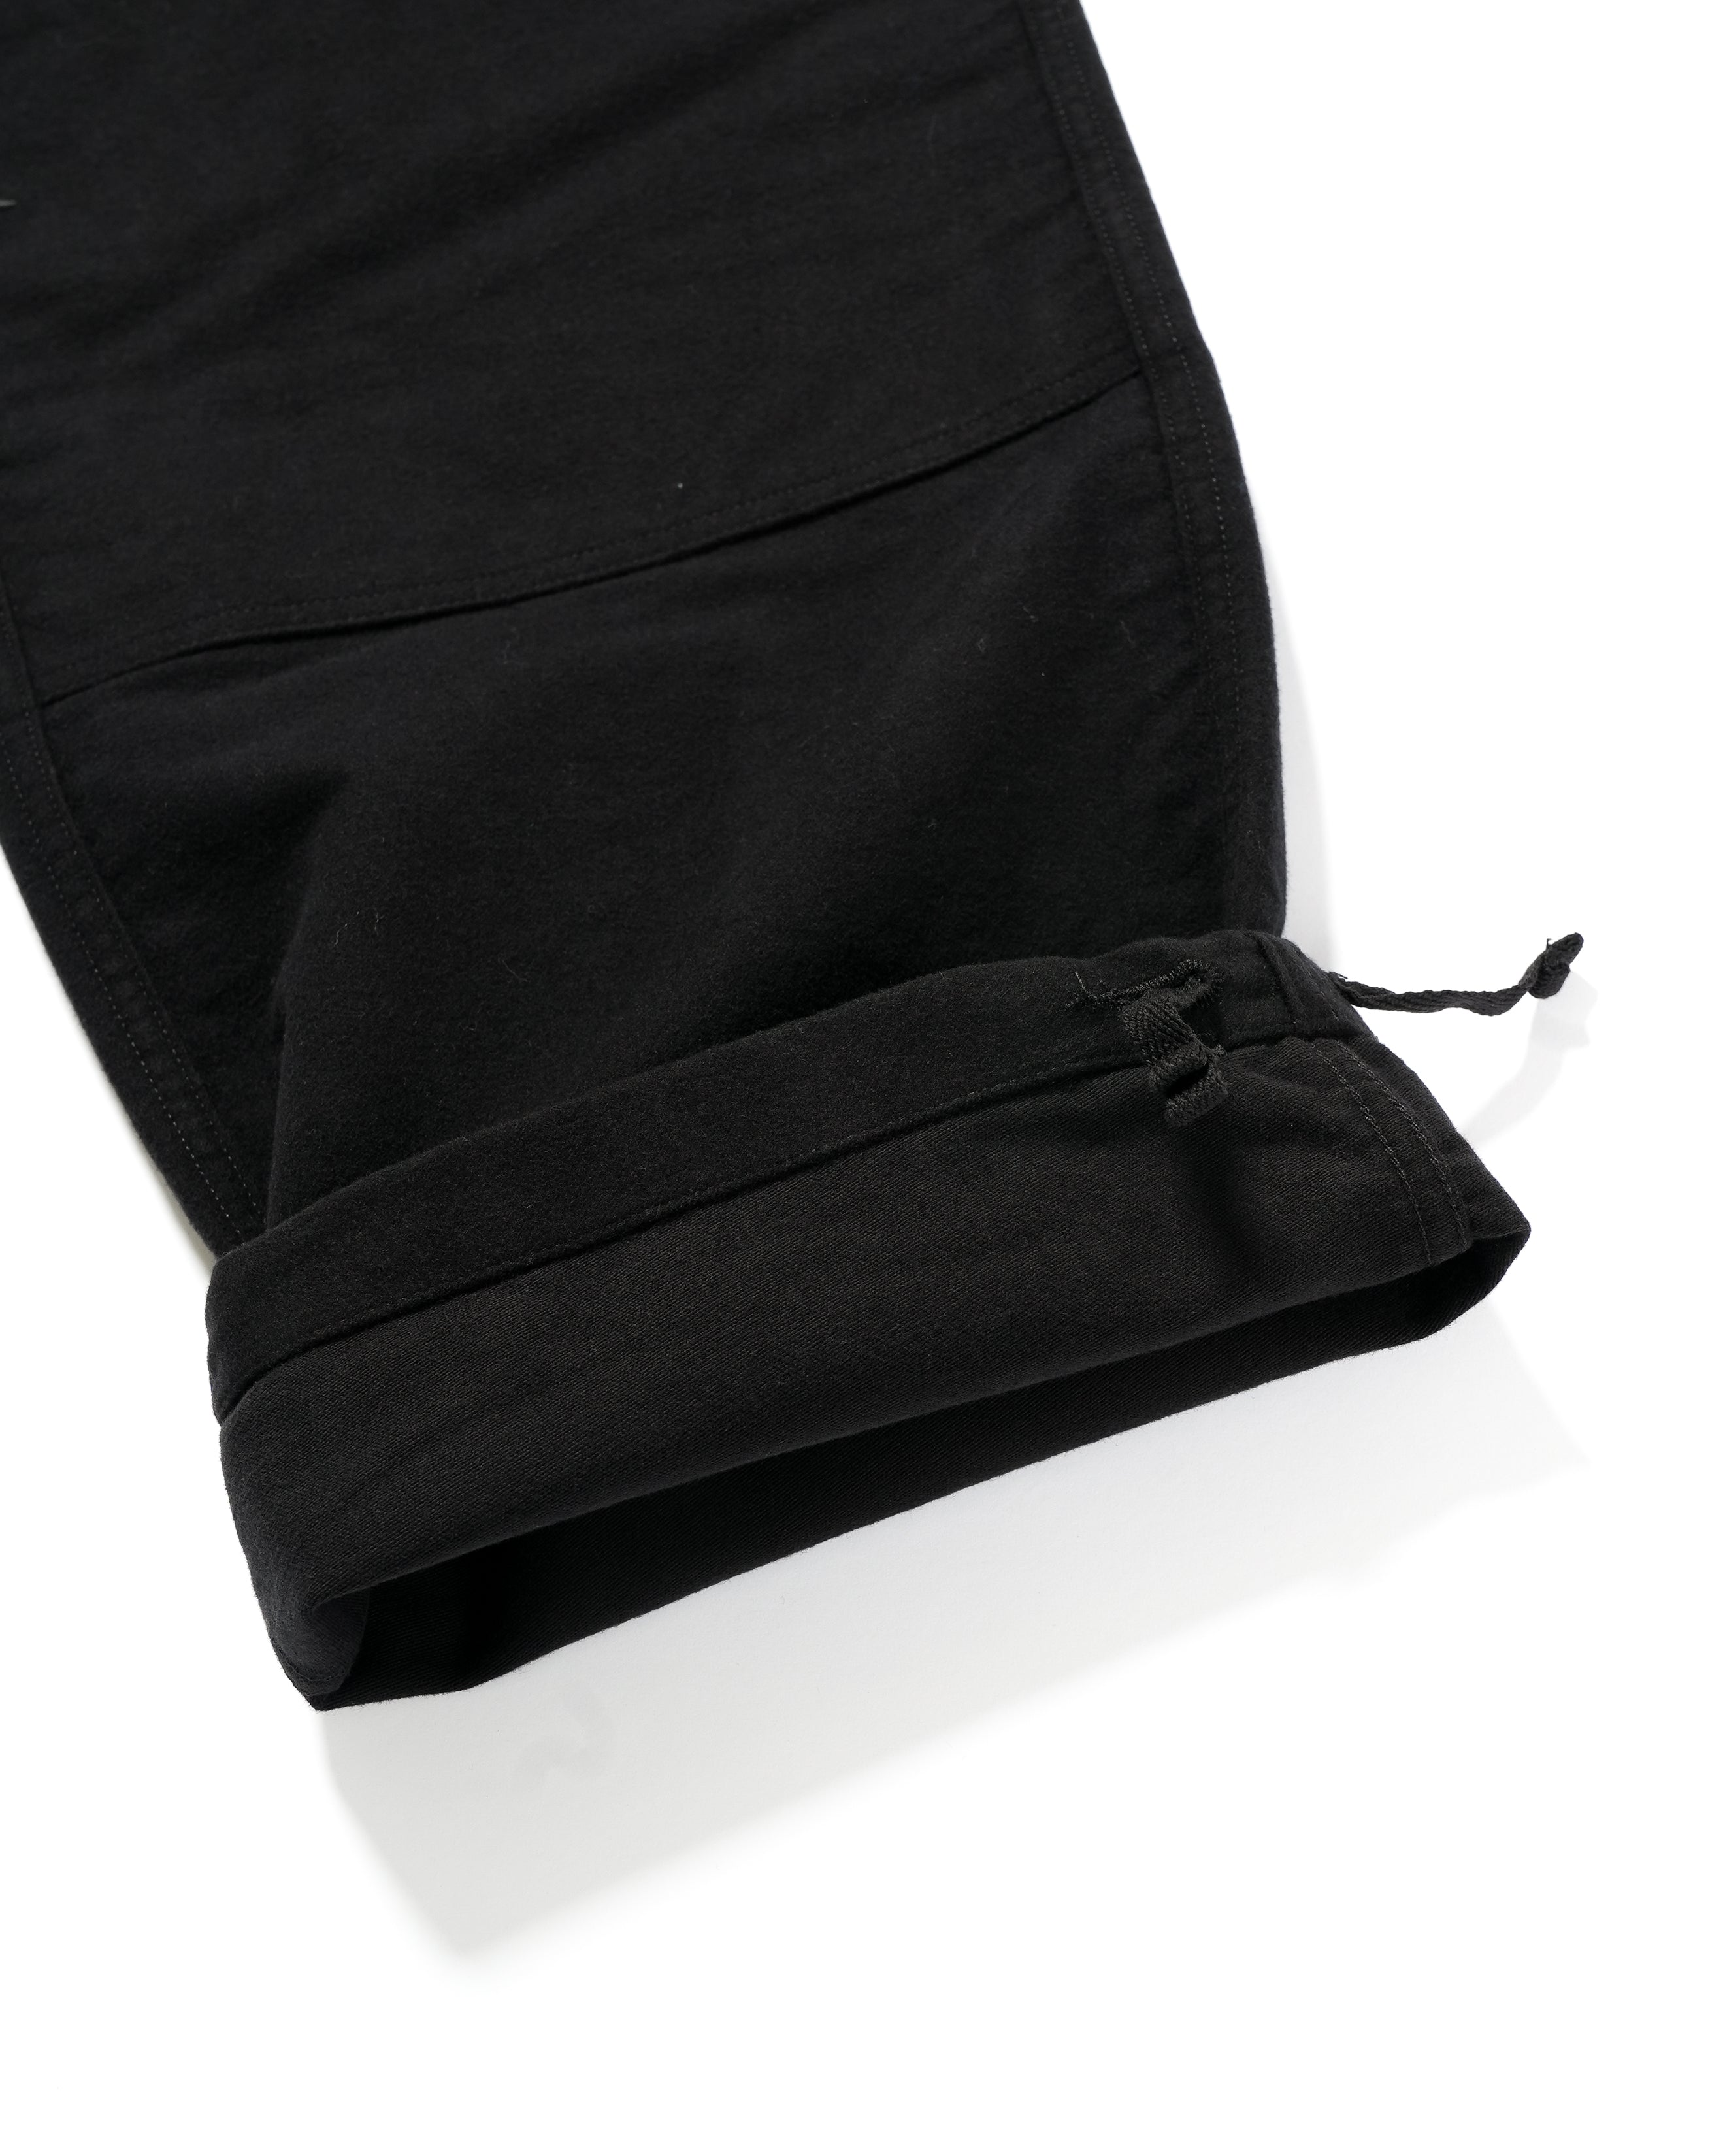 Deck Pant - Black Cotton Moleskin - NNY SP